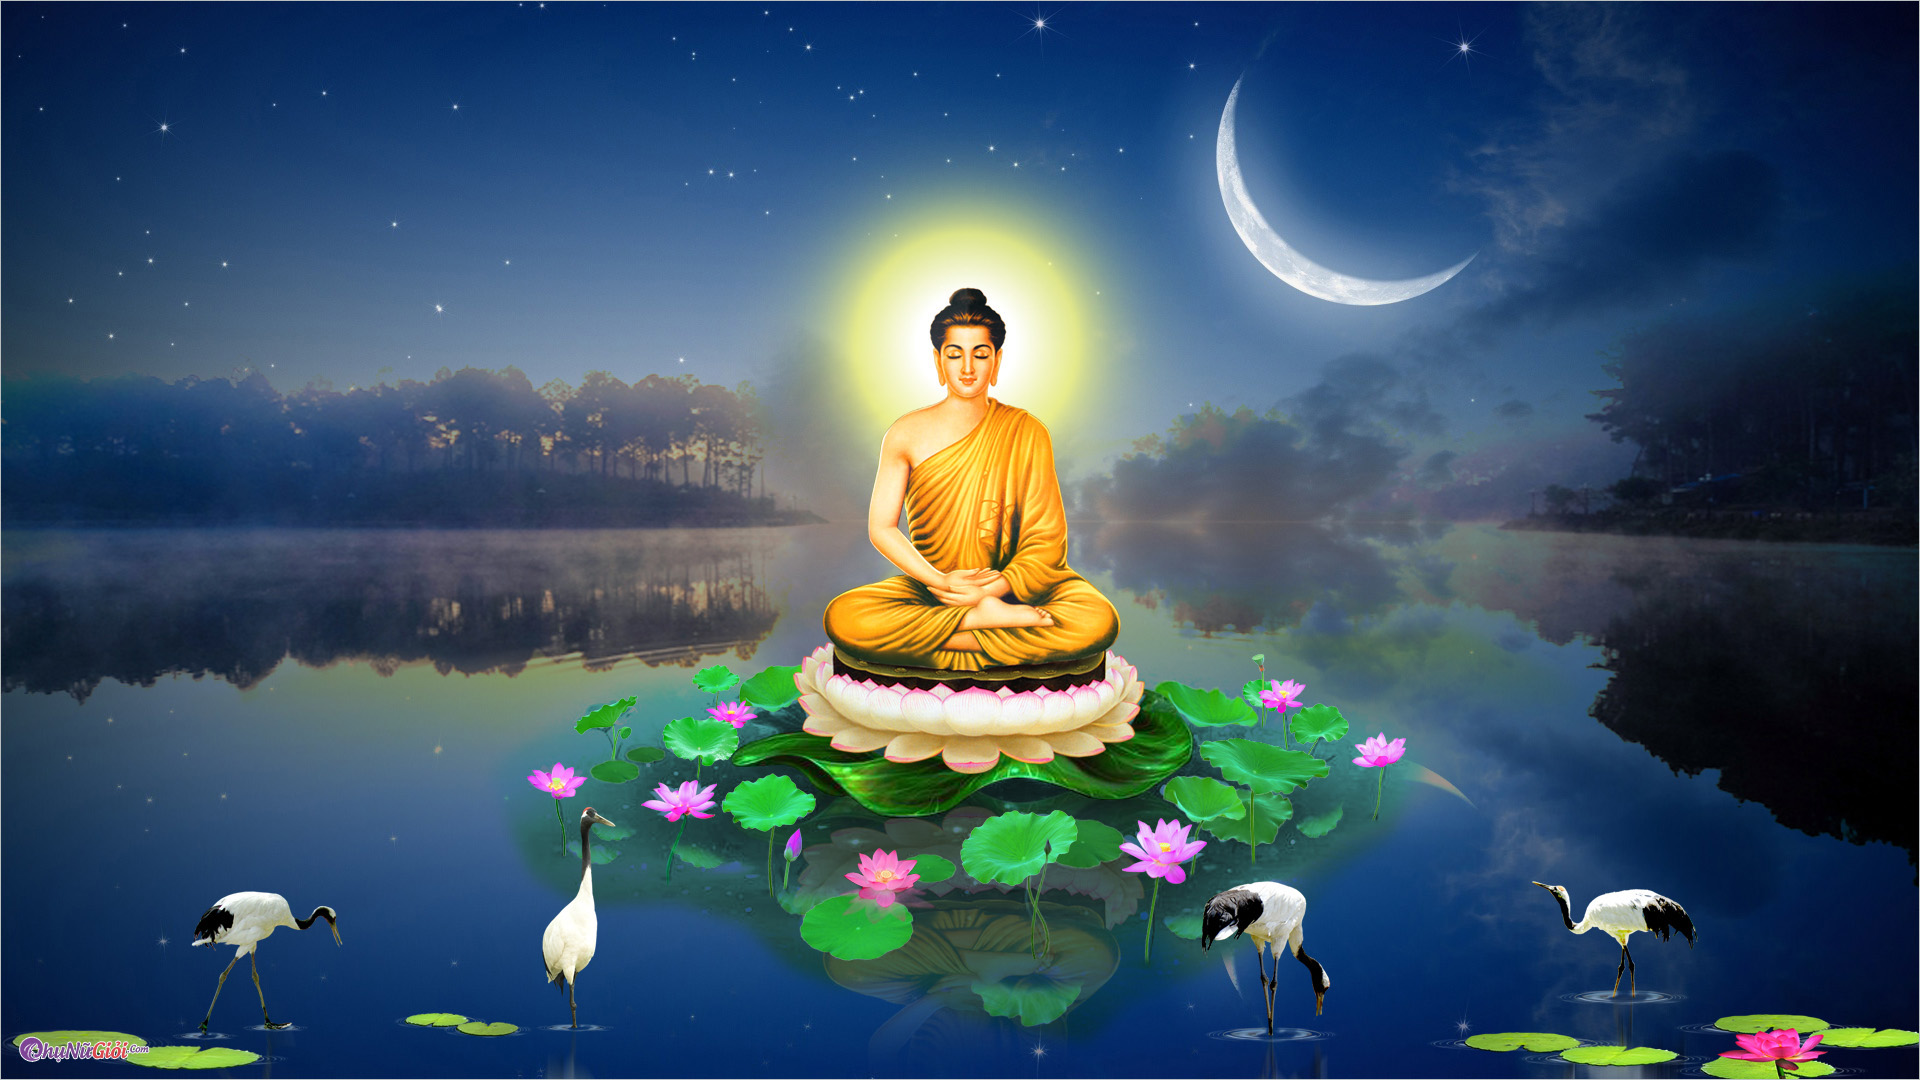 Giờ đây, bạn có thể biến máy tính của mình thành một khu vực tâm linh với hình nền Phật thanh tịnh. Khám phá bức hình đầy nghệ thuật và sự thanh tịnh này, và tạo sự yên bình, sự tập trung, và sự cân bằng trong cuộc sống của bạn.